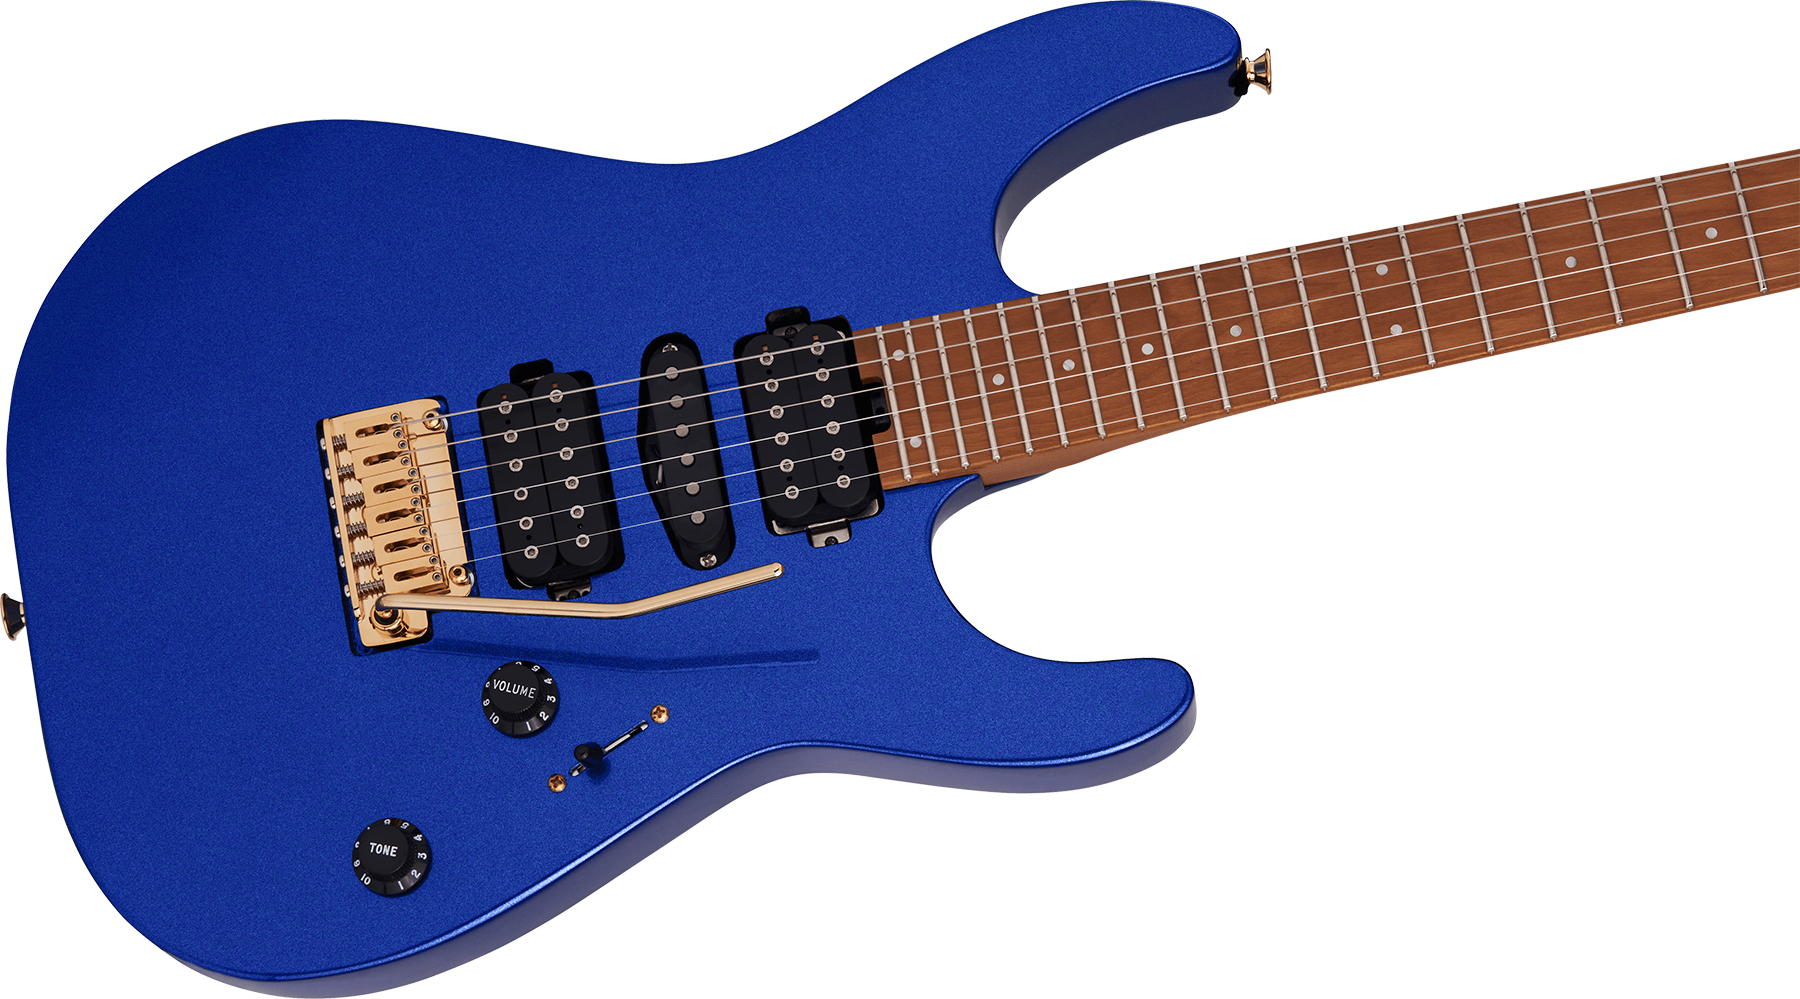 Charvel Dinky Dk24 Hsh 2pt Cm Pro-mod Seymour Duncan Trem Mn - Mystic Blue - Str shape electric guitar - Variation 2